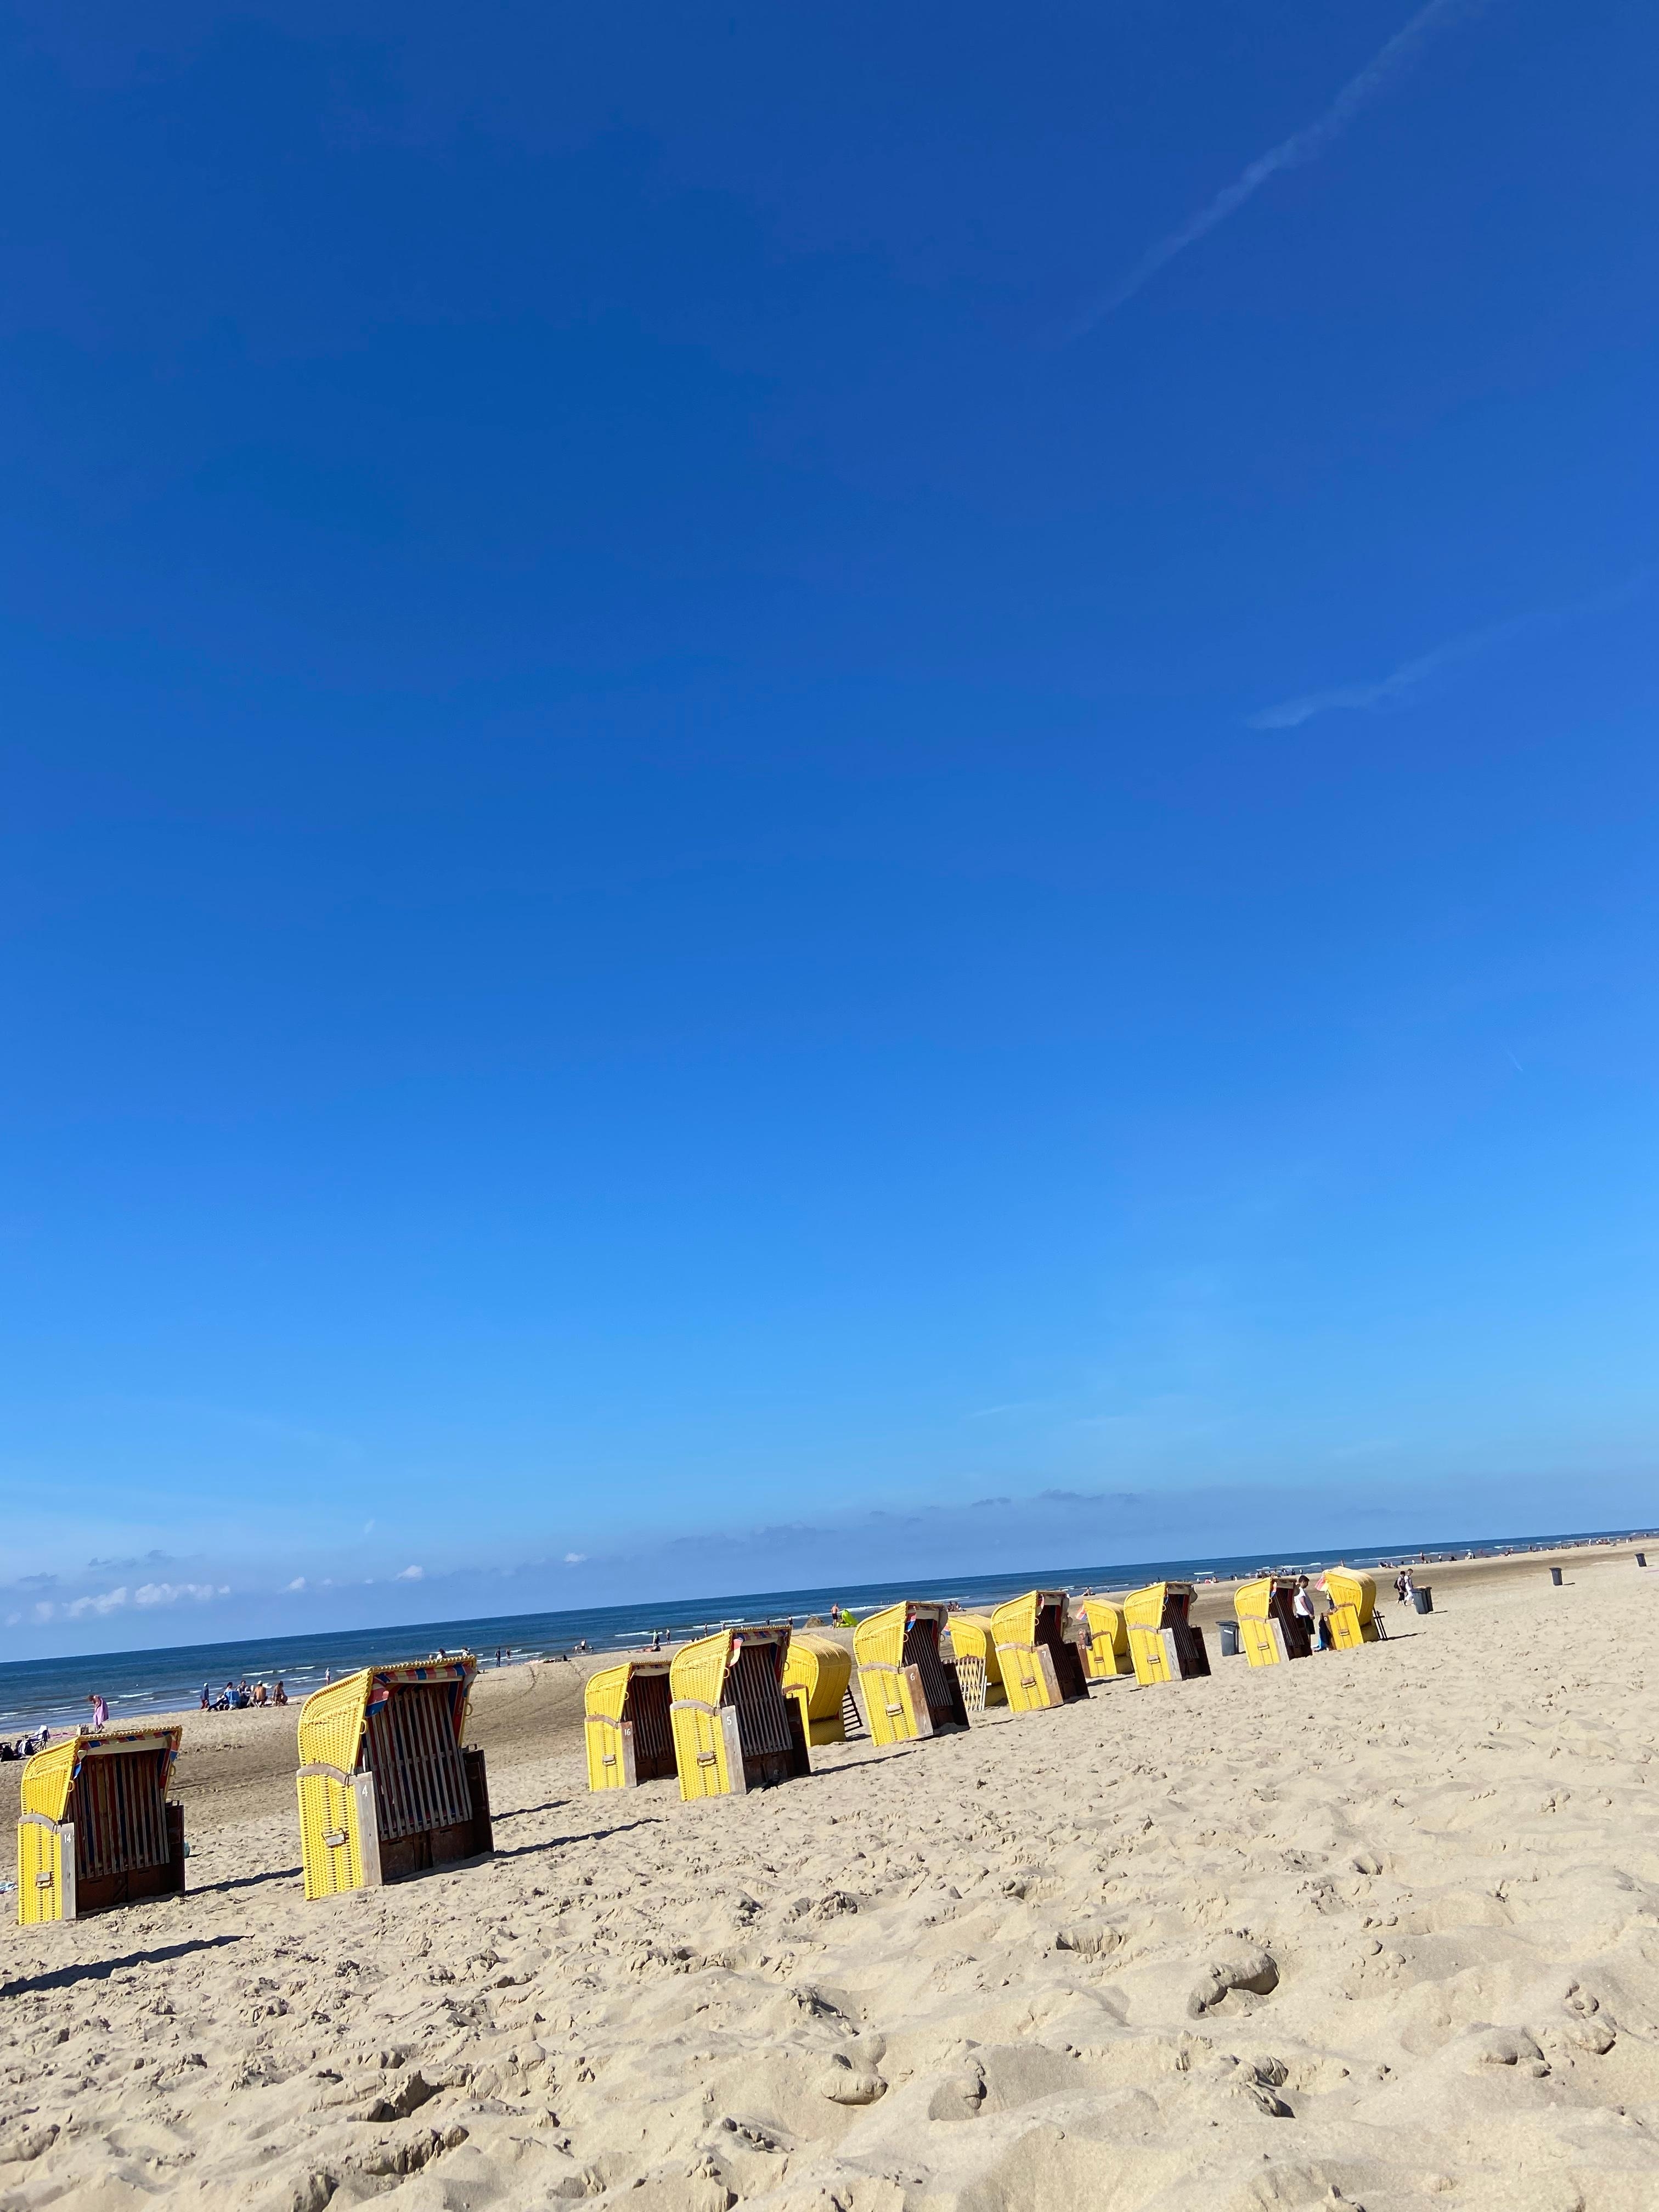 #egmond aan Zee #ich will das Meer sehen #ferien vom
Alltag 